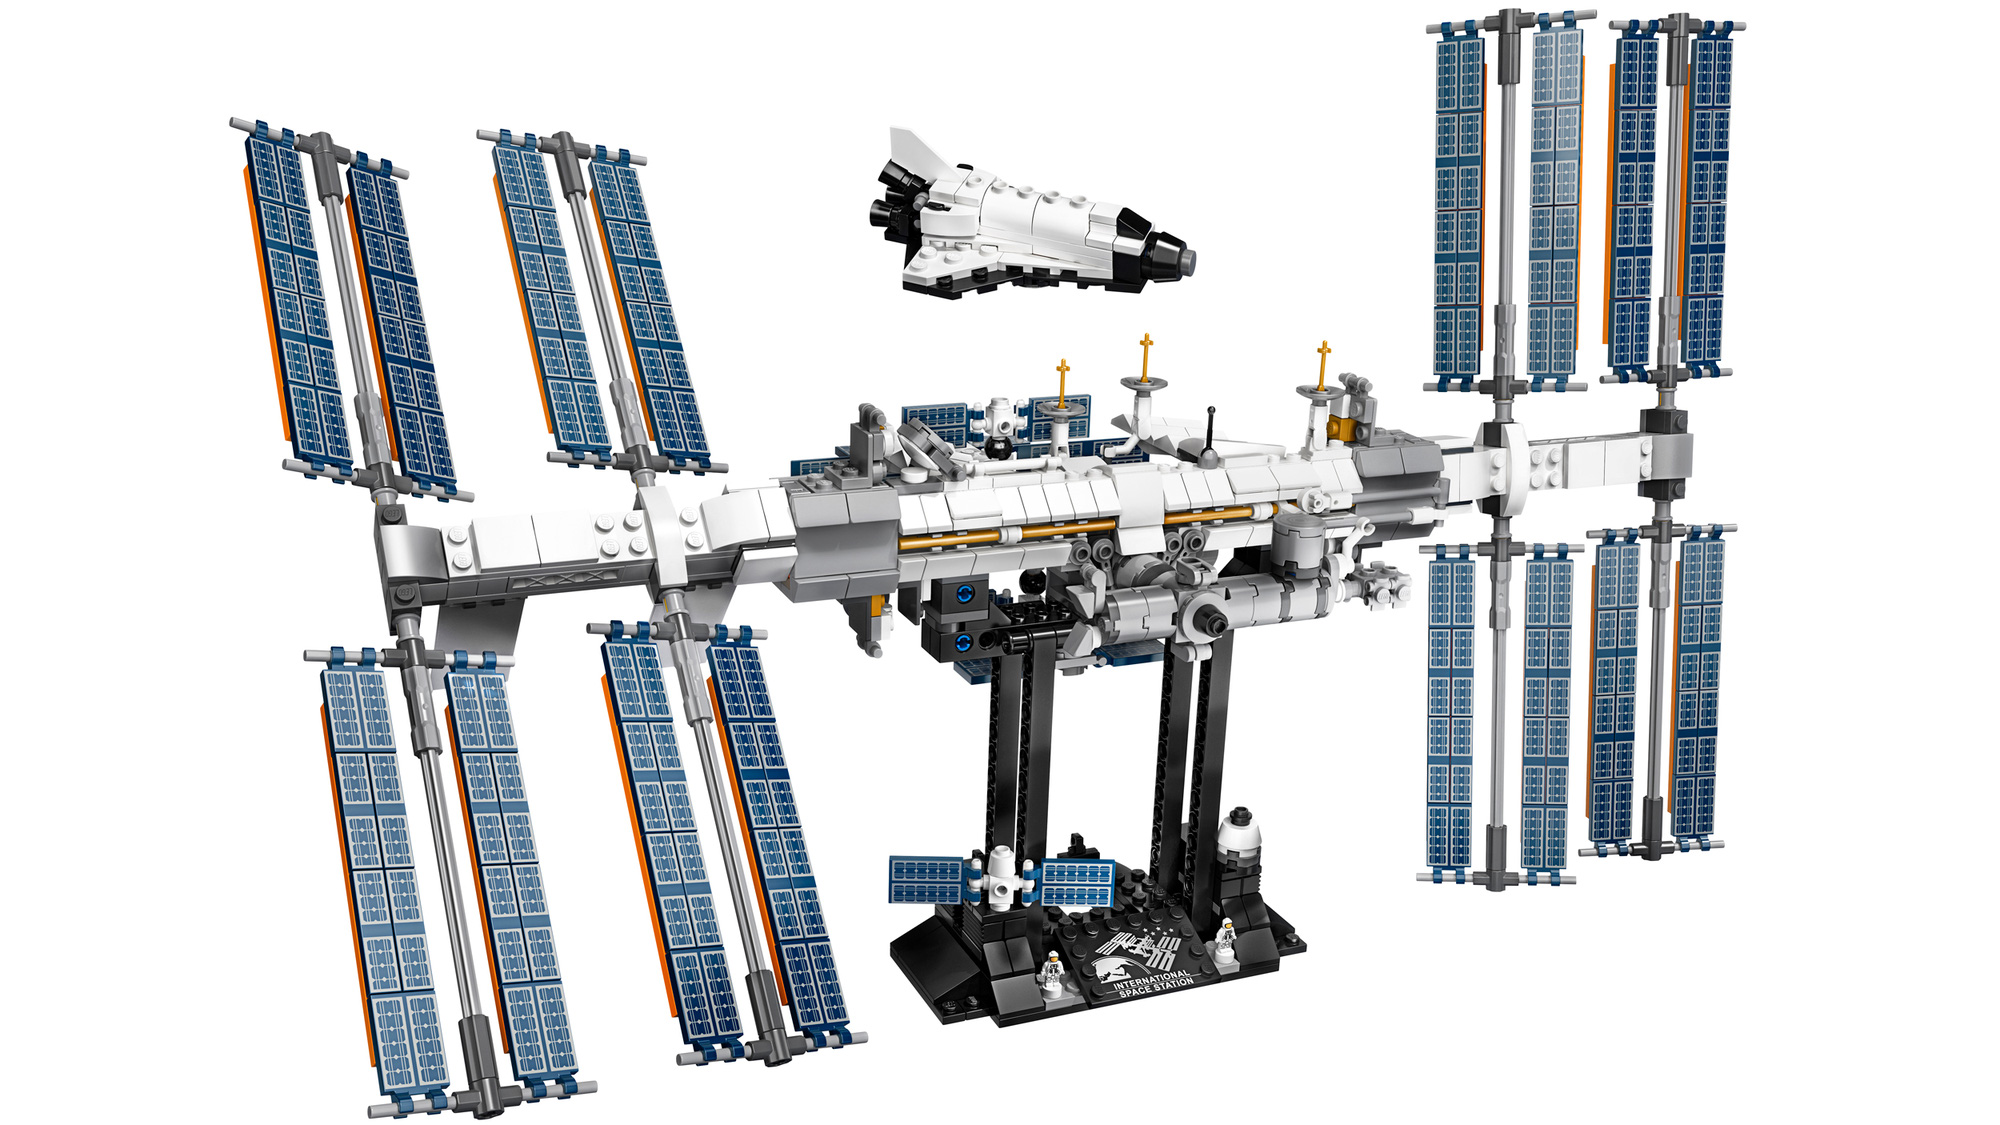 Lego Trạm vũ trụ quốc tế - Bạn luôn đam mê Lego và vũ trụ? Hãy đến với hình ảnh Lego Trạm vũ trụ quốc tế - một trong những thước phim đẹp nhất về Lego trong suốt nhiều năm qua. Bạn sẽ được thấy những chi tiết tuyệt vời về thiết kế và cách mà Lego đã tái hiện trạm vũ trụ điều khiển quốc tế.